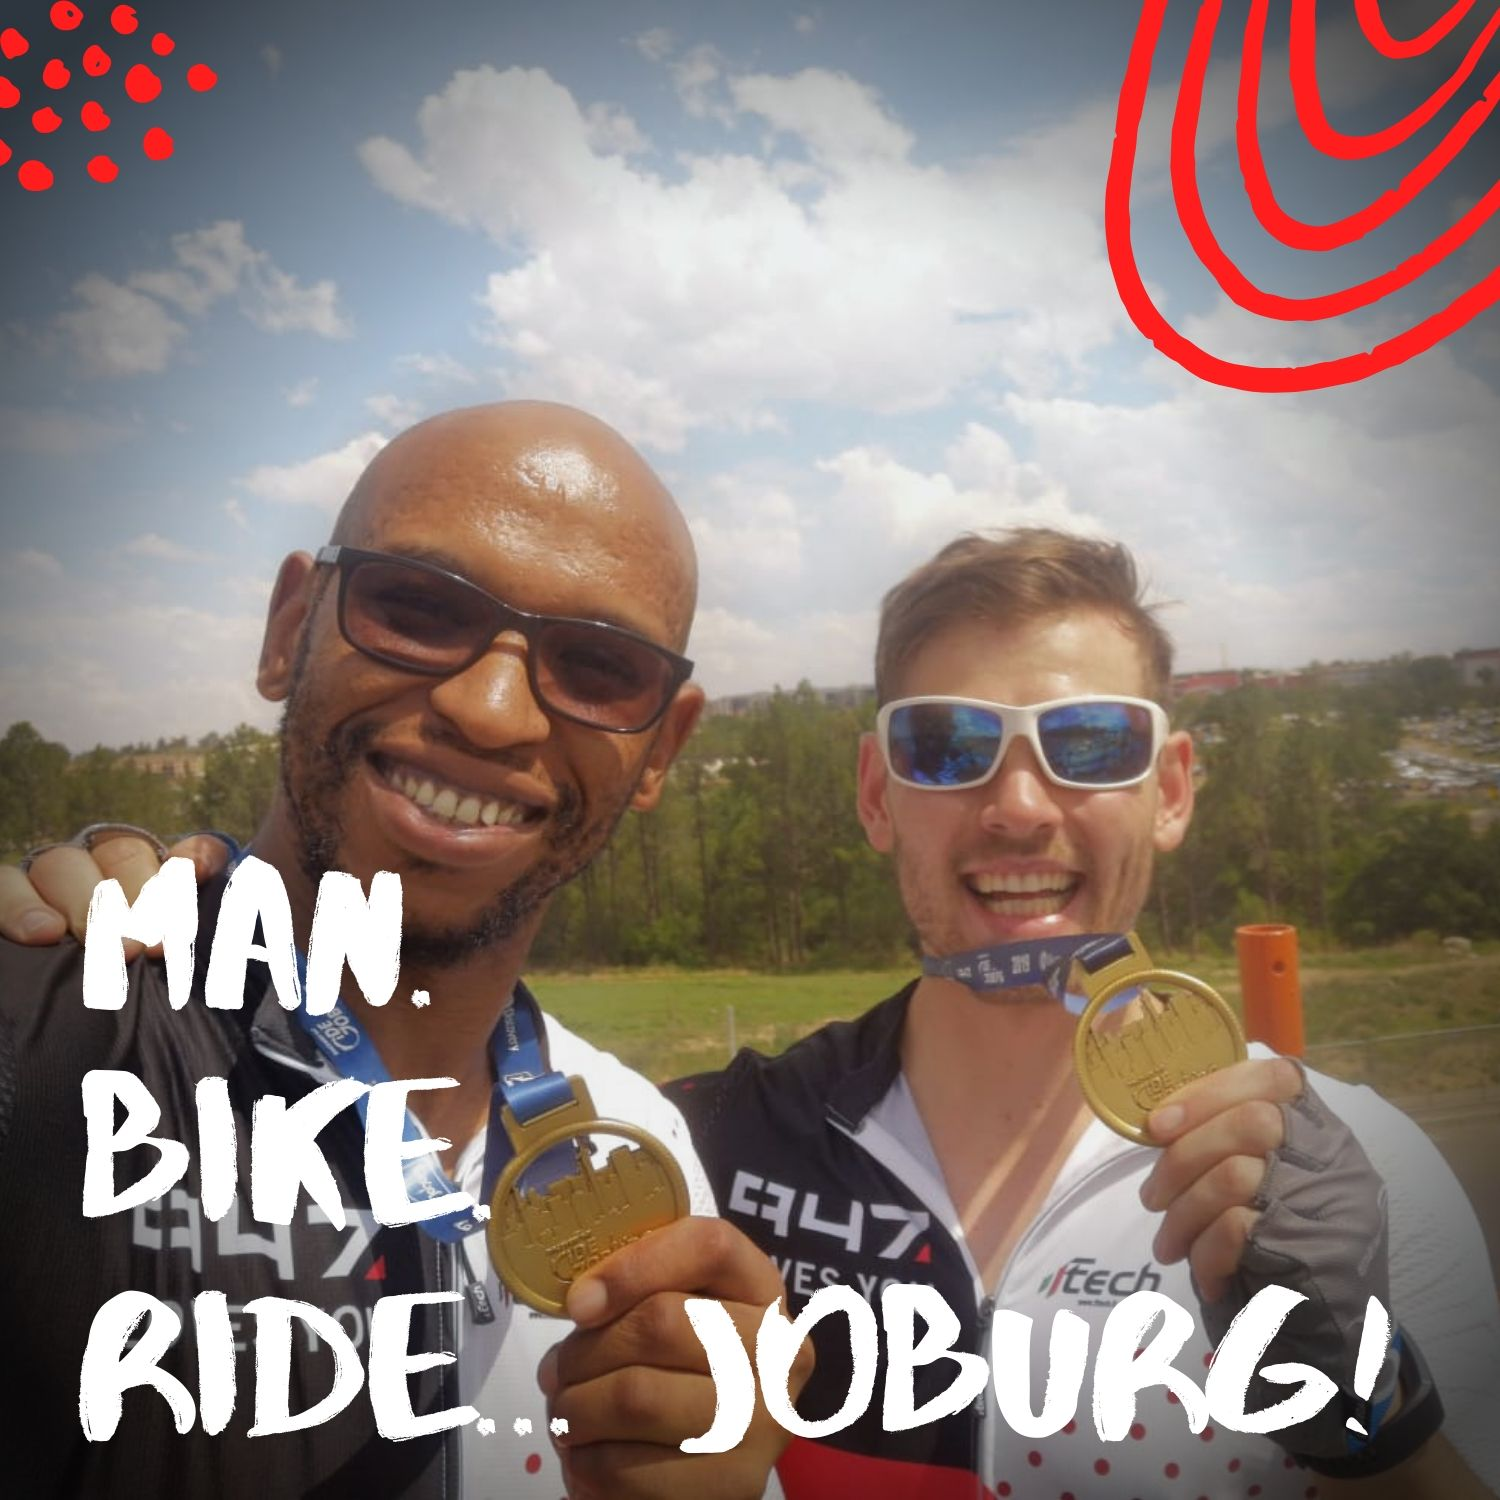 Man. Bike. Ride... Joburg: Raceday excitement!